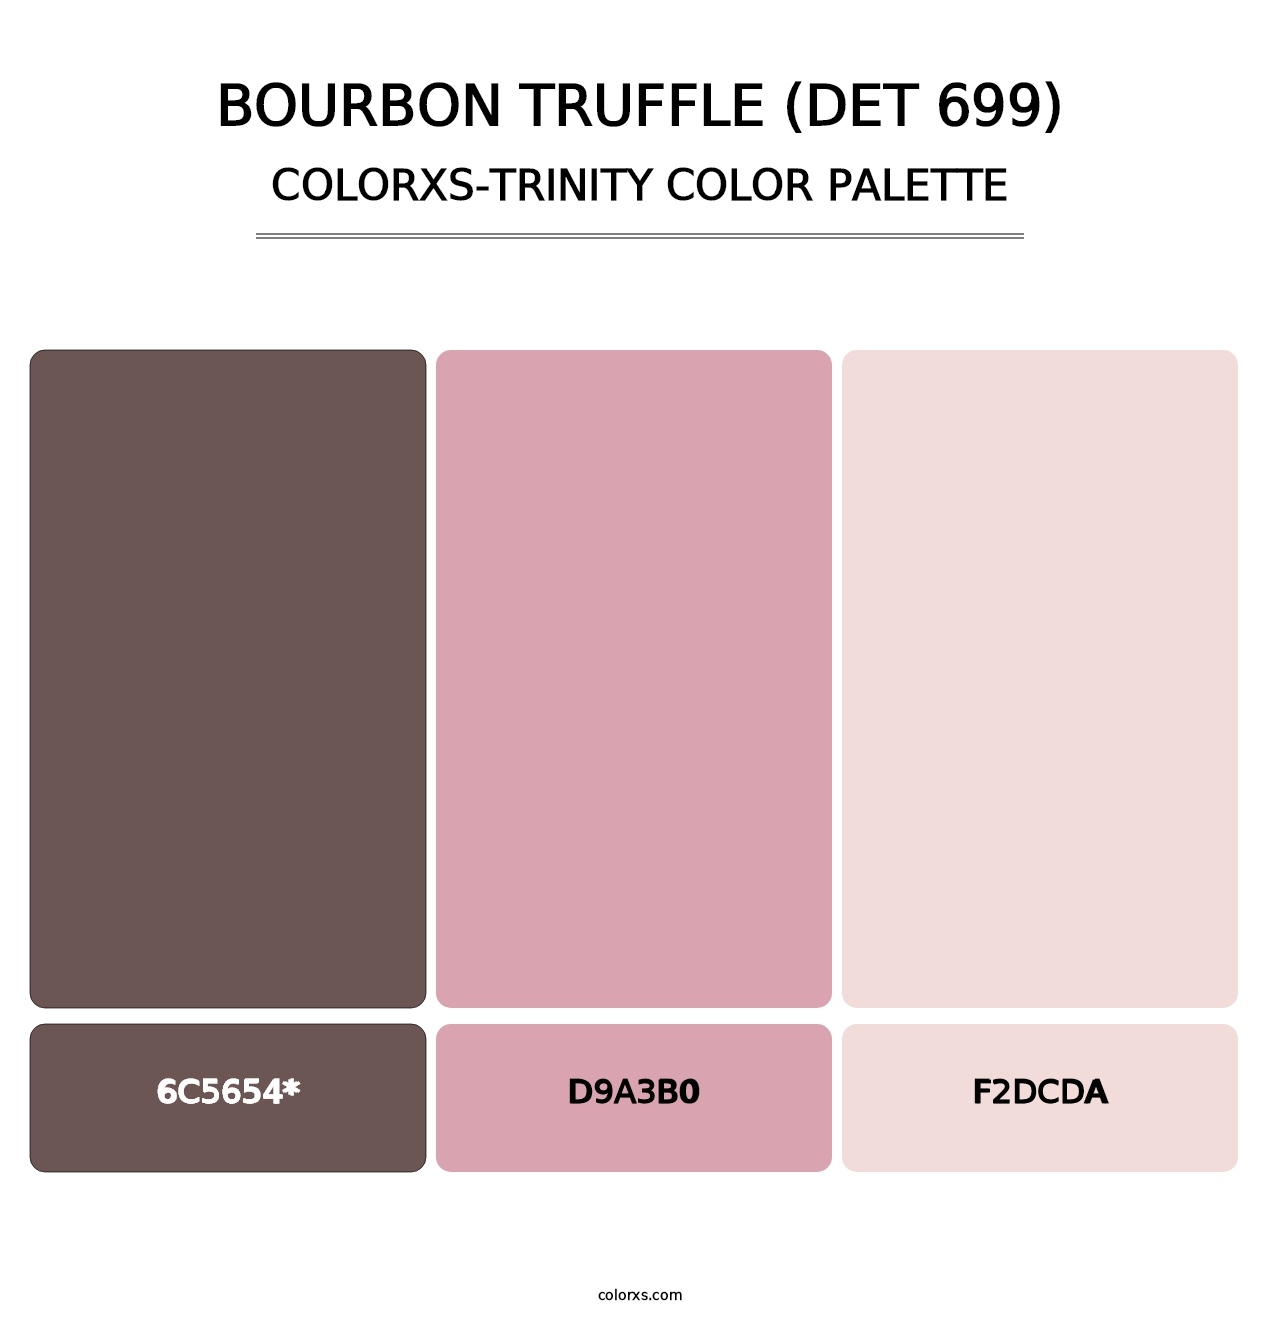 Bourbon Truffle (DET 699) - Colorxs Trinity Palette